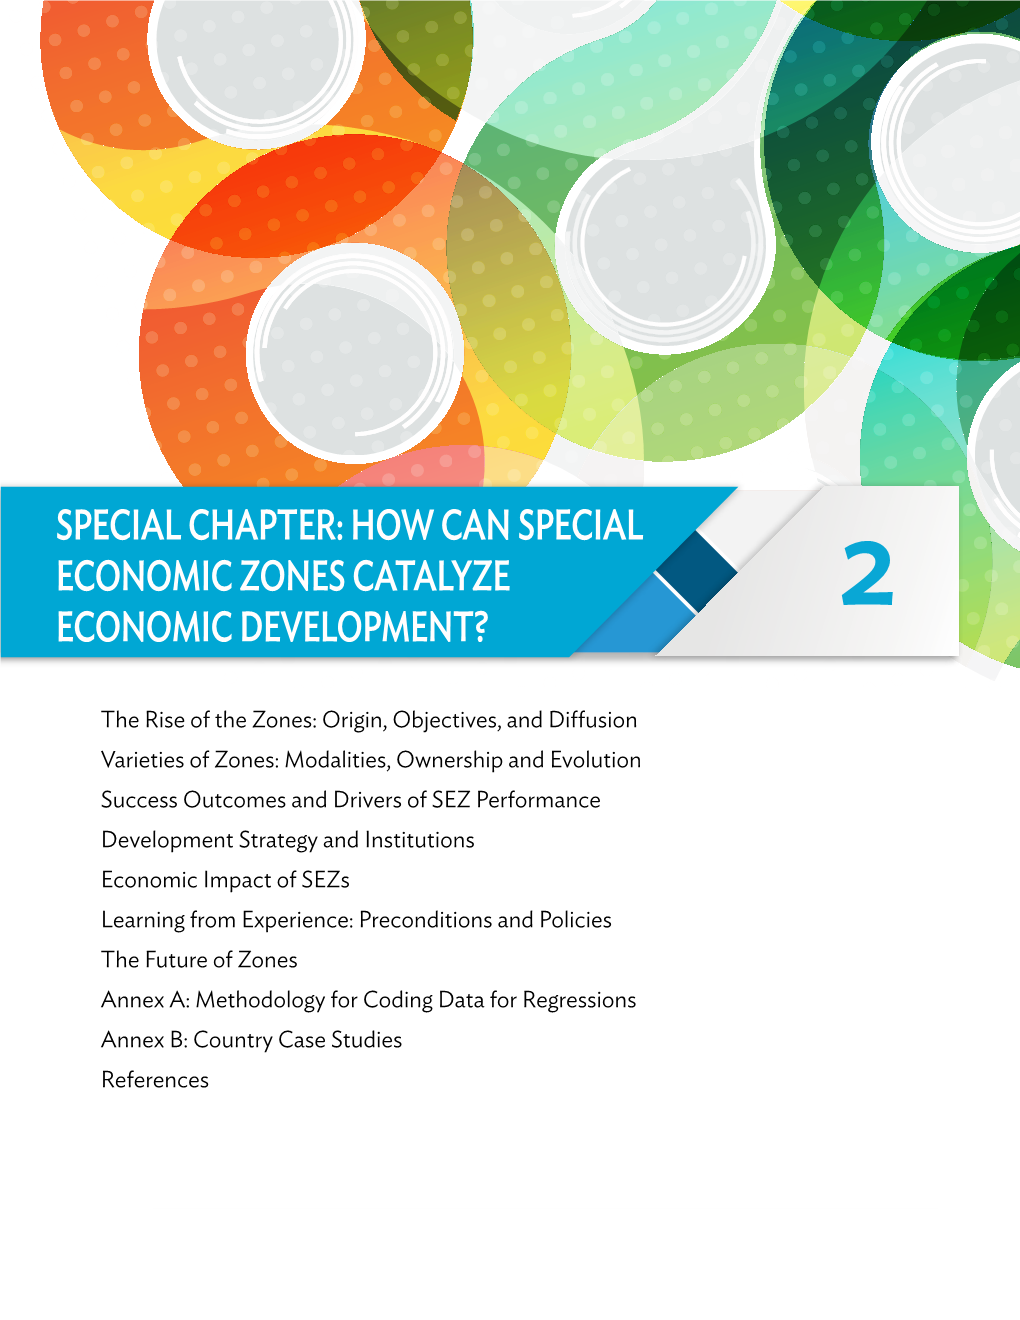 How Can Special Economic Zones Catalyze Economic Development? 2